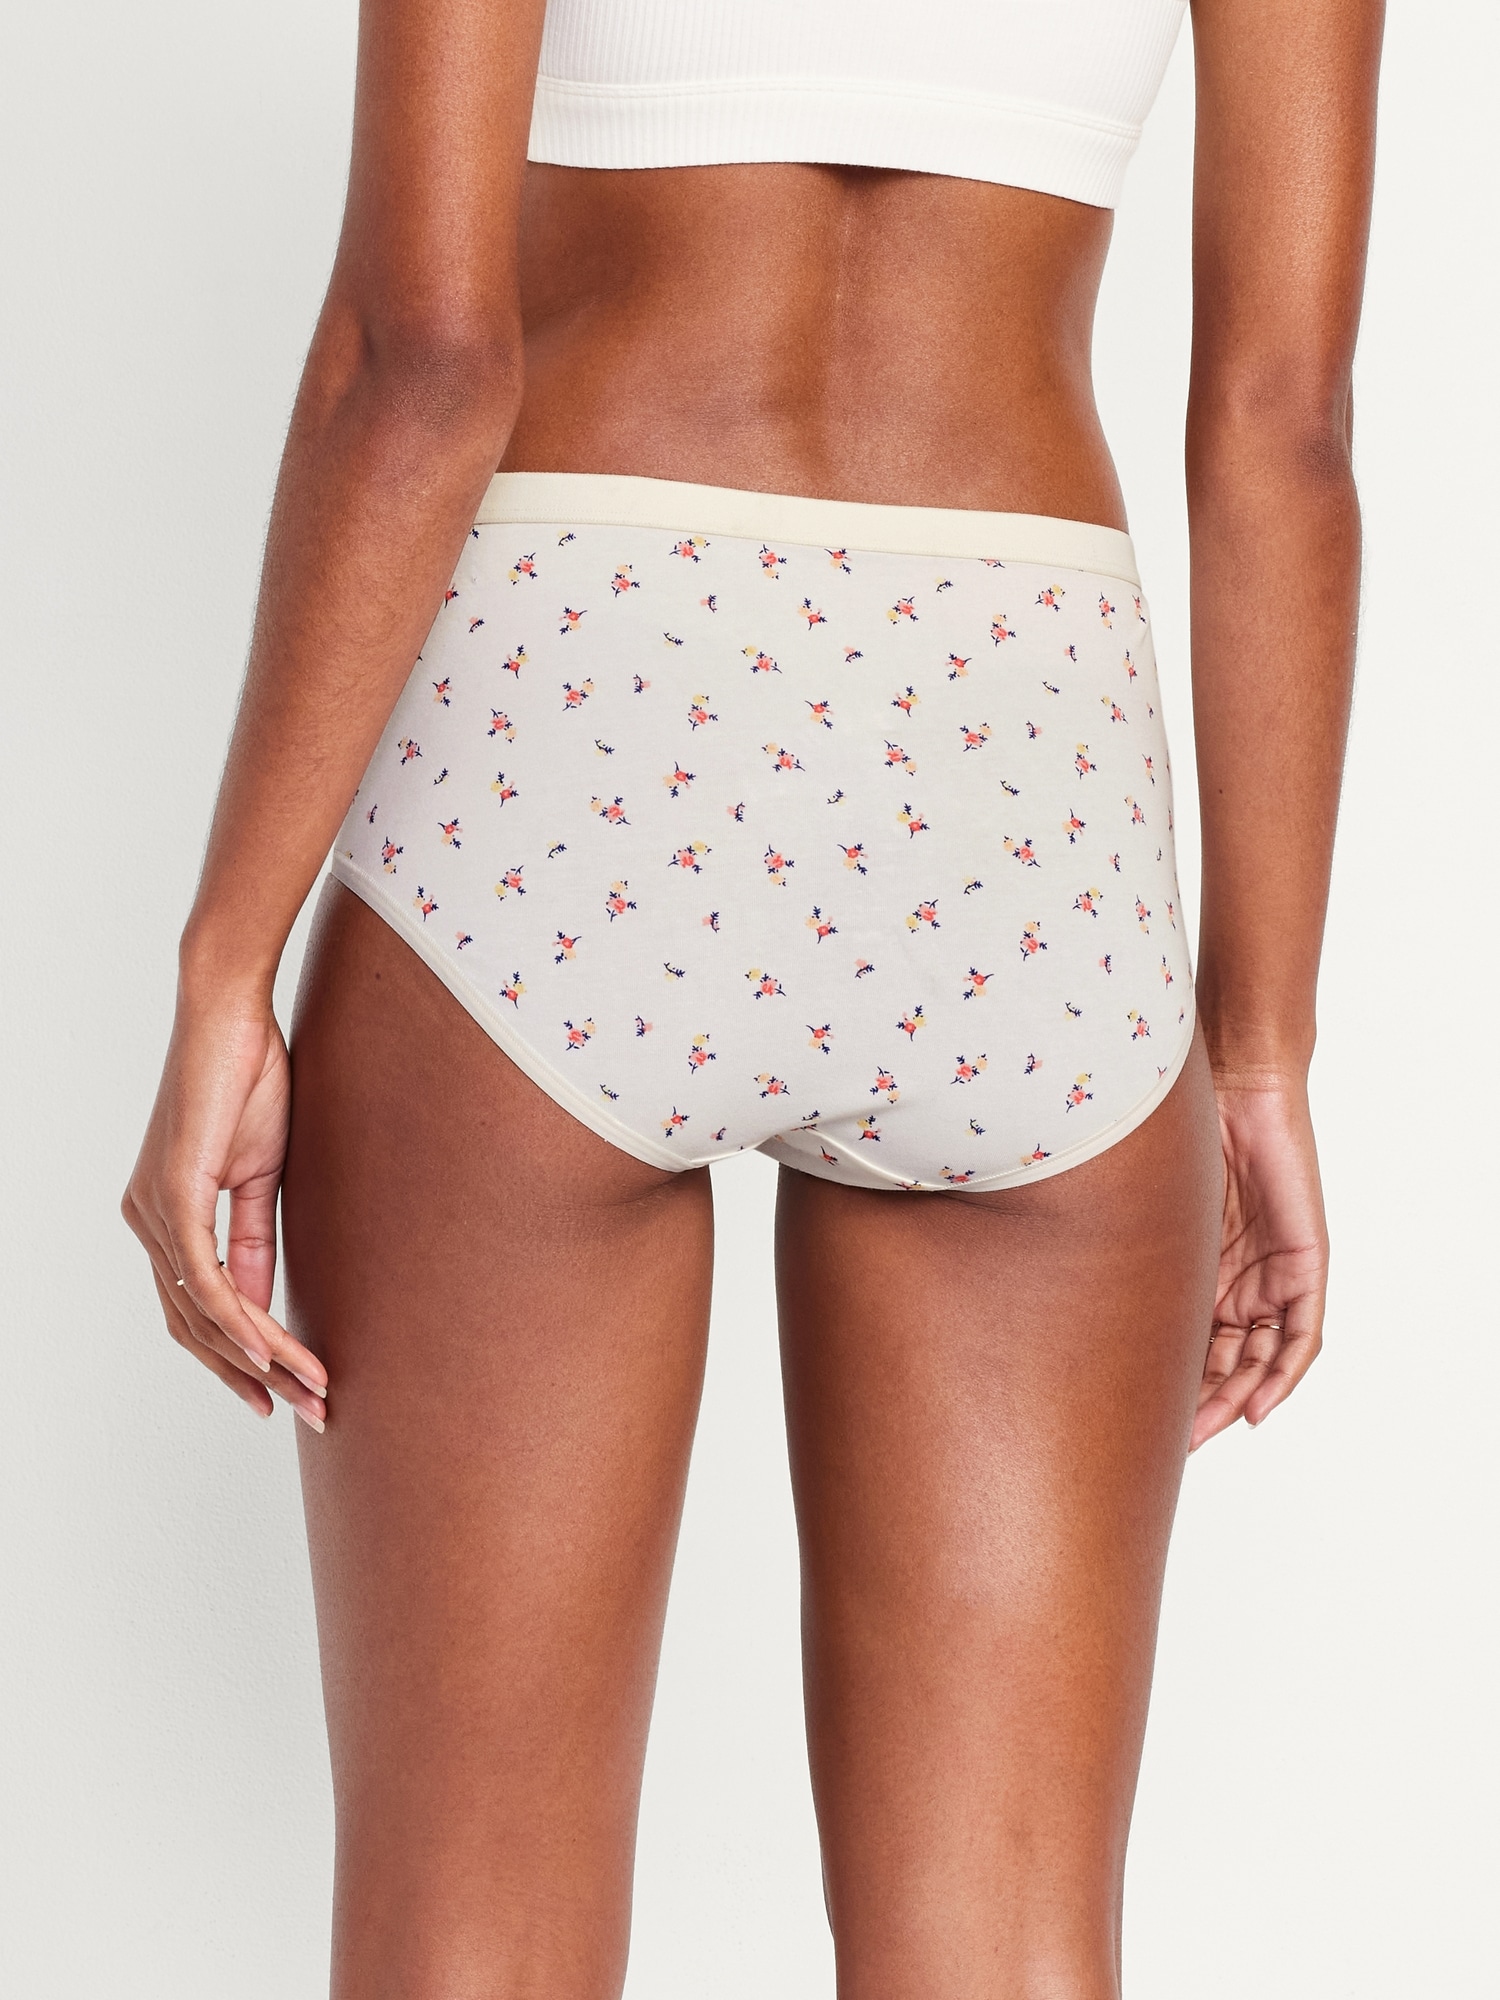 Spdoo Women's Cotton Bikini Brief Underwear, High Waist Stretch